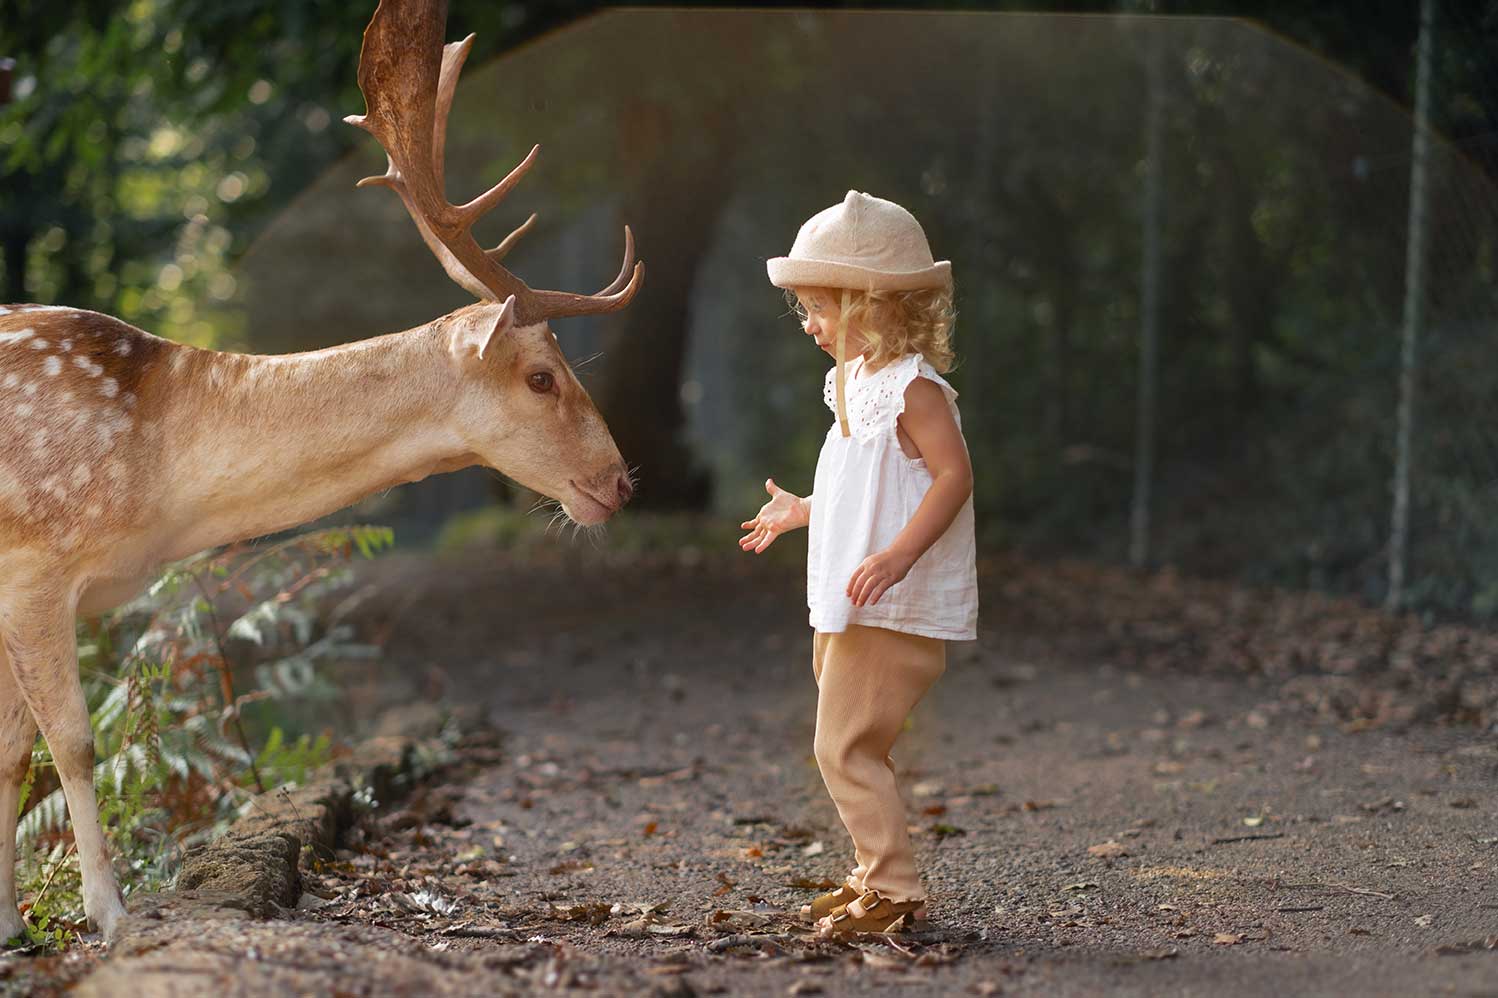 Fotografía de venado en entorno natural de frente a una niña.